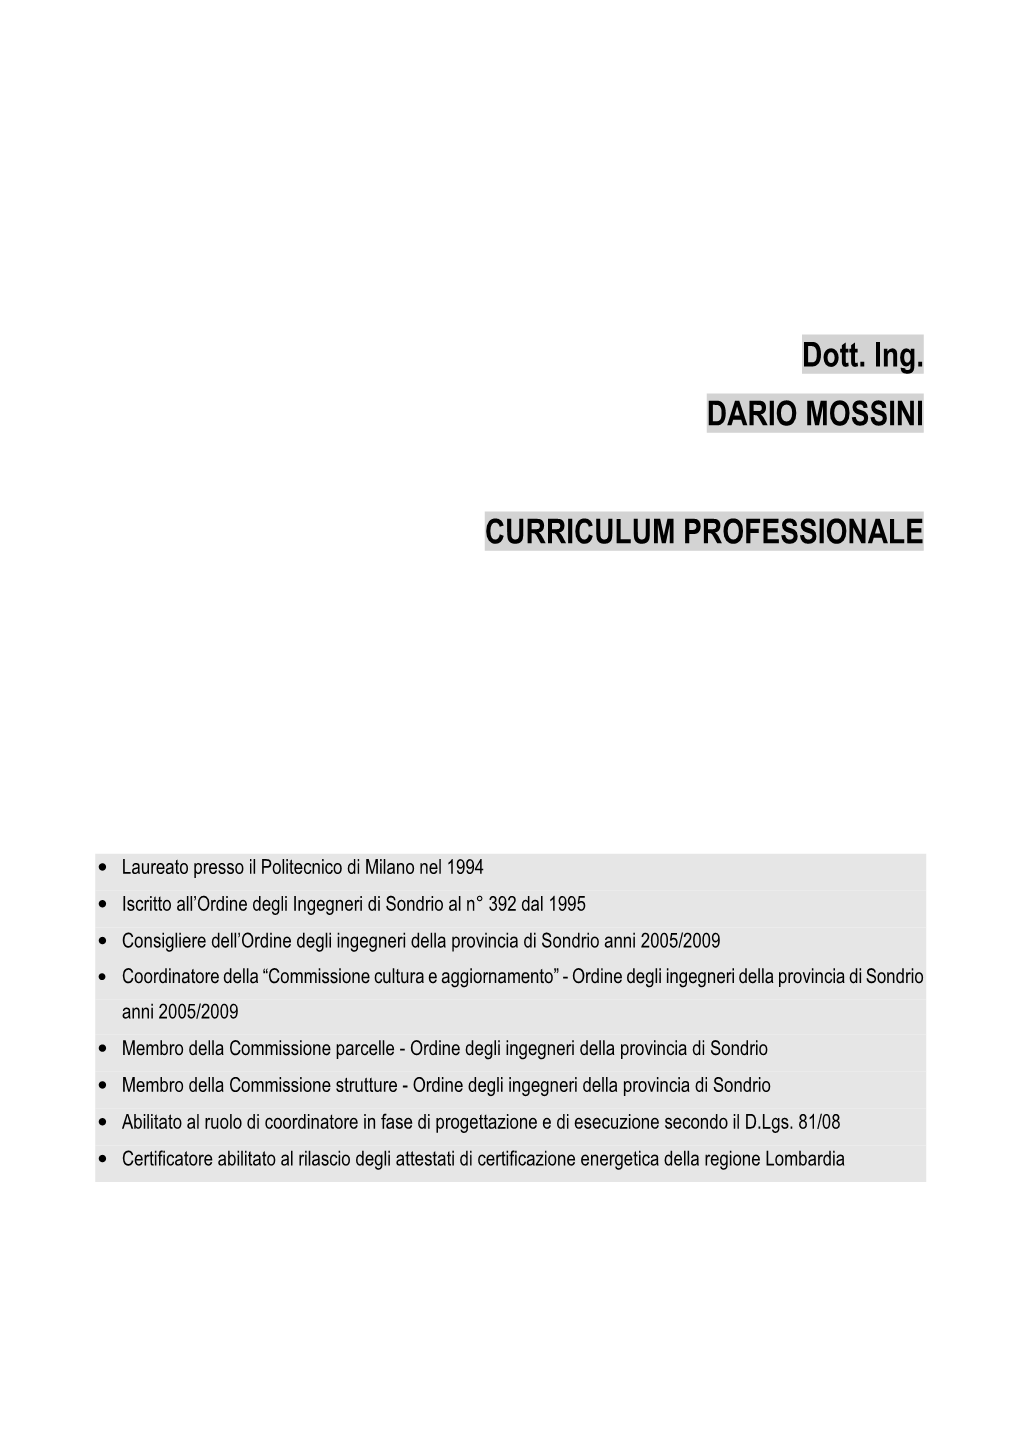 Dott. Ing. DARIO MOSSINI CURRICULUM PROFESSIONALE